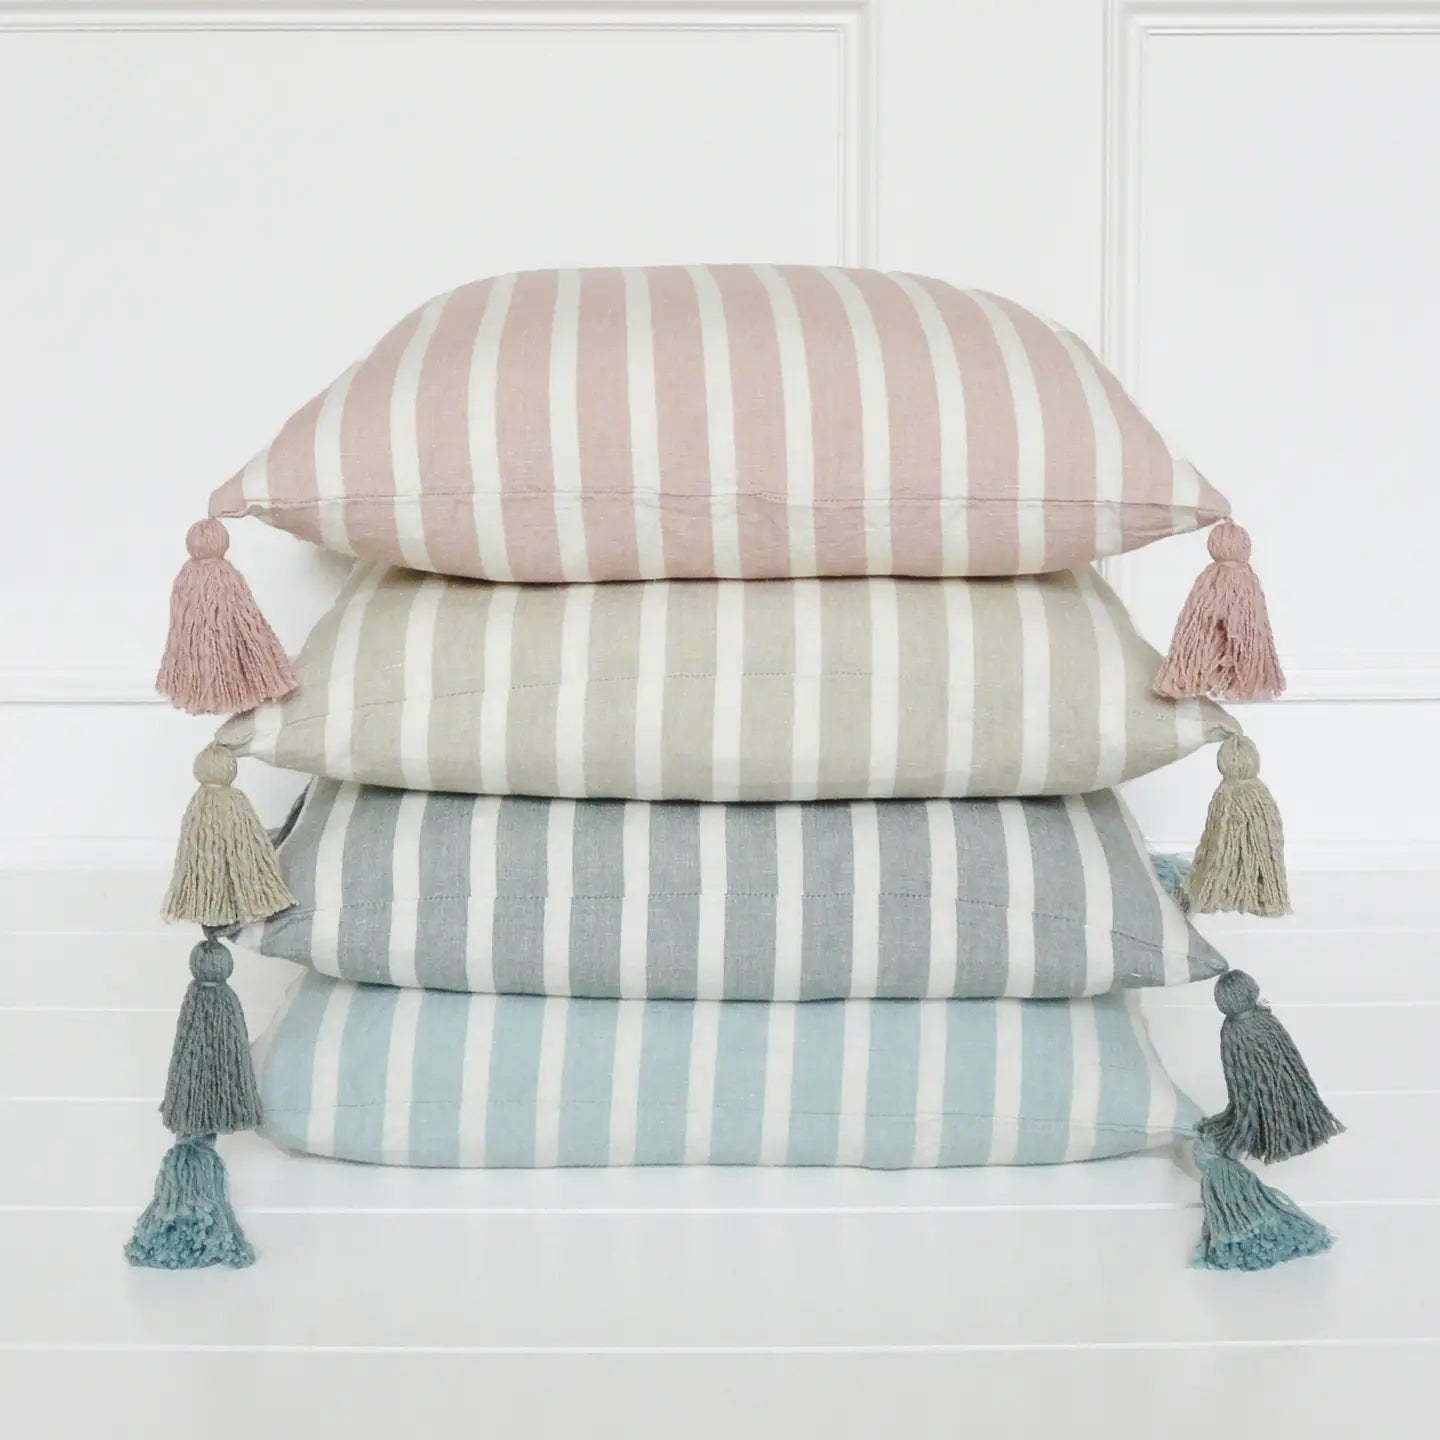 Rose Tetbury Stripe Tassel Cushion Cover